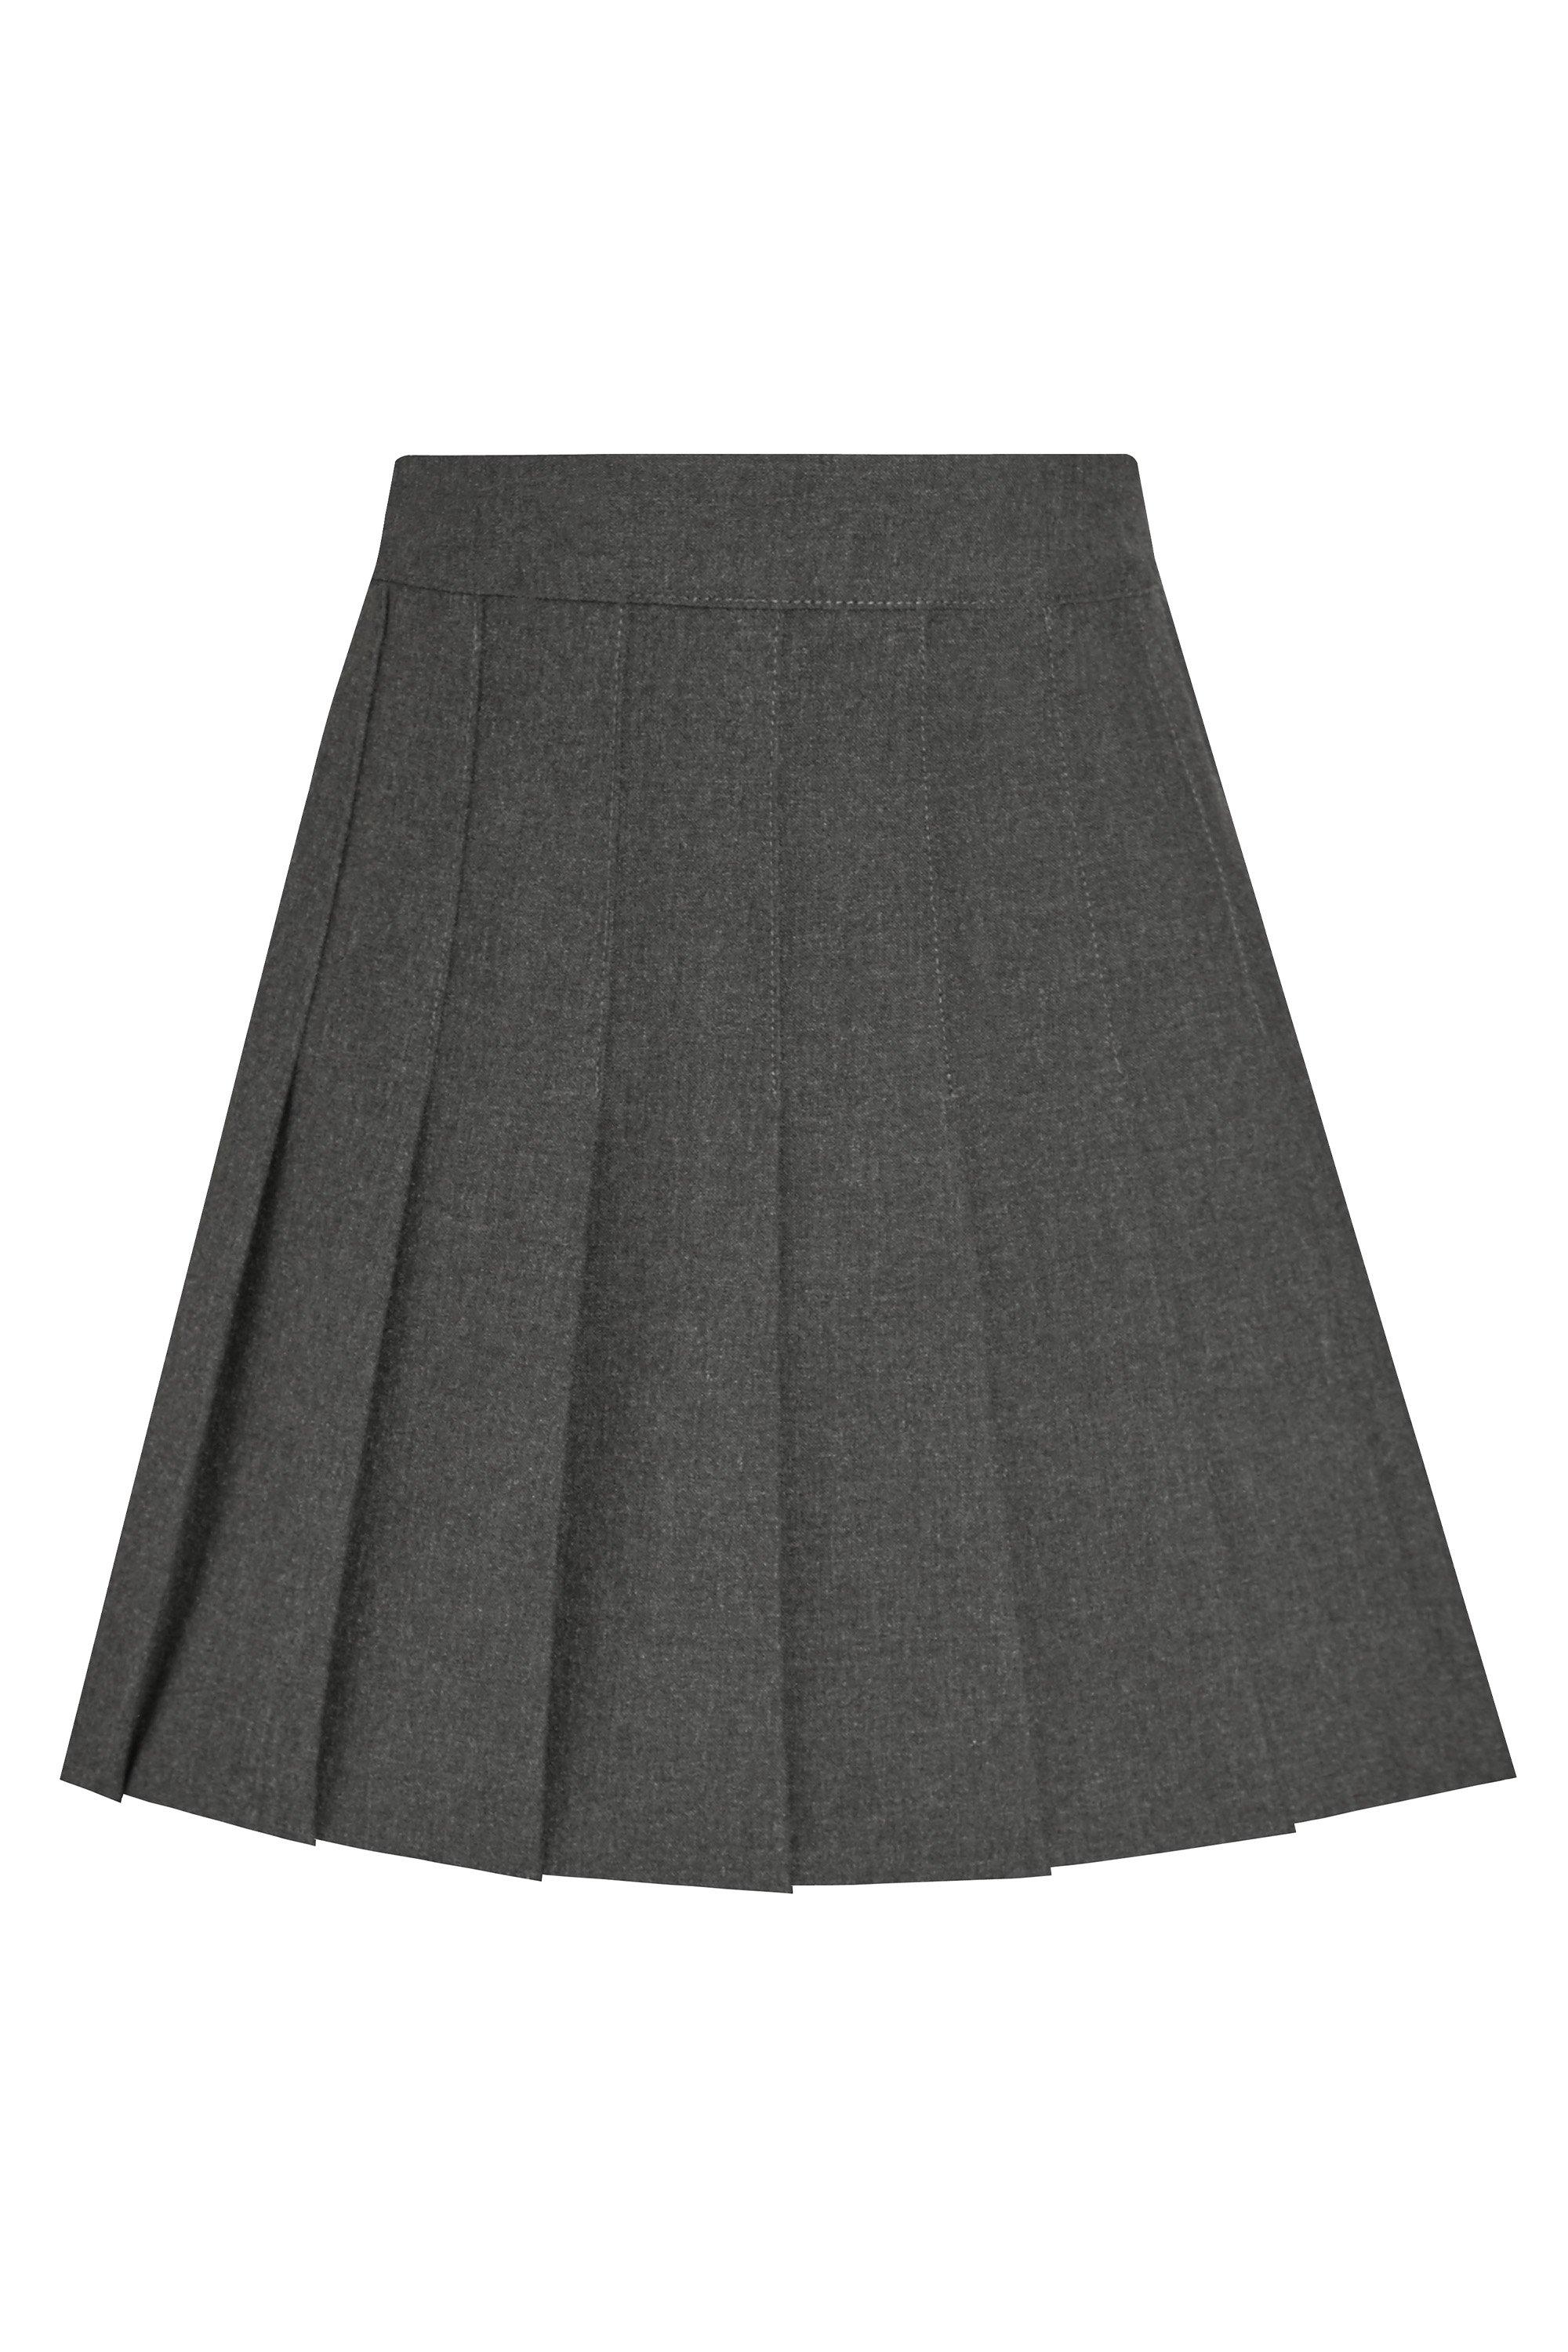 Плиссированная школьная юбка David Luke, серый школьная юбка полусолнце стильные непоседы плиссированная с поясом на резинке мини размер 140 68 60 серый